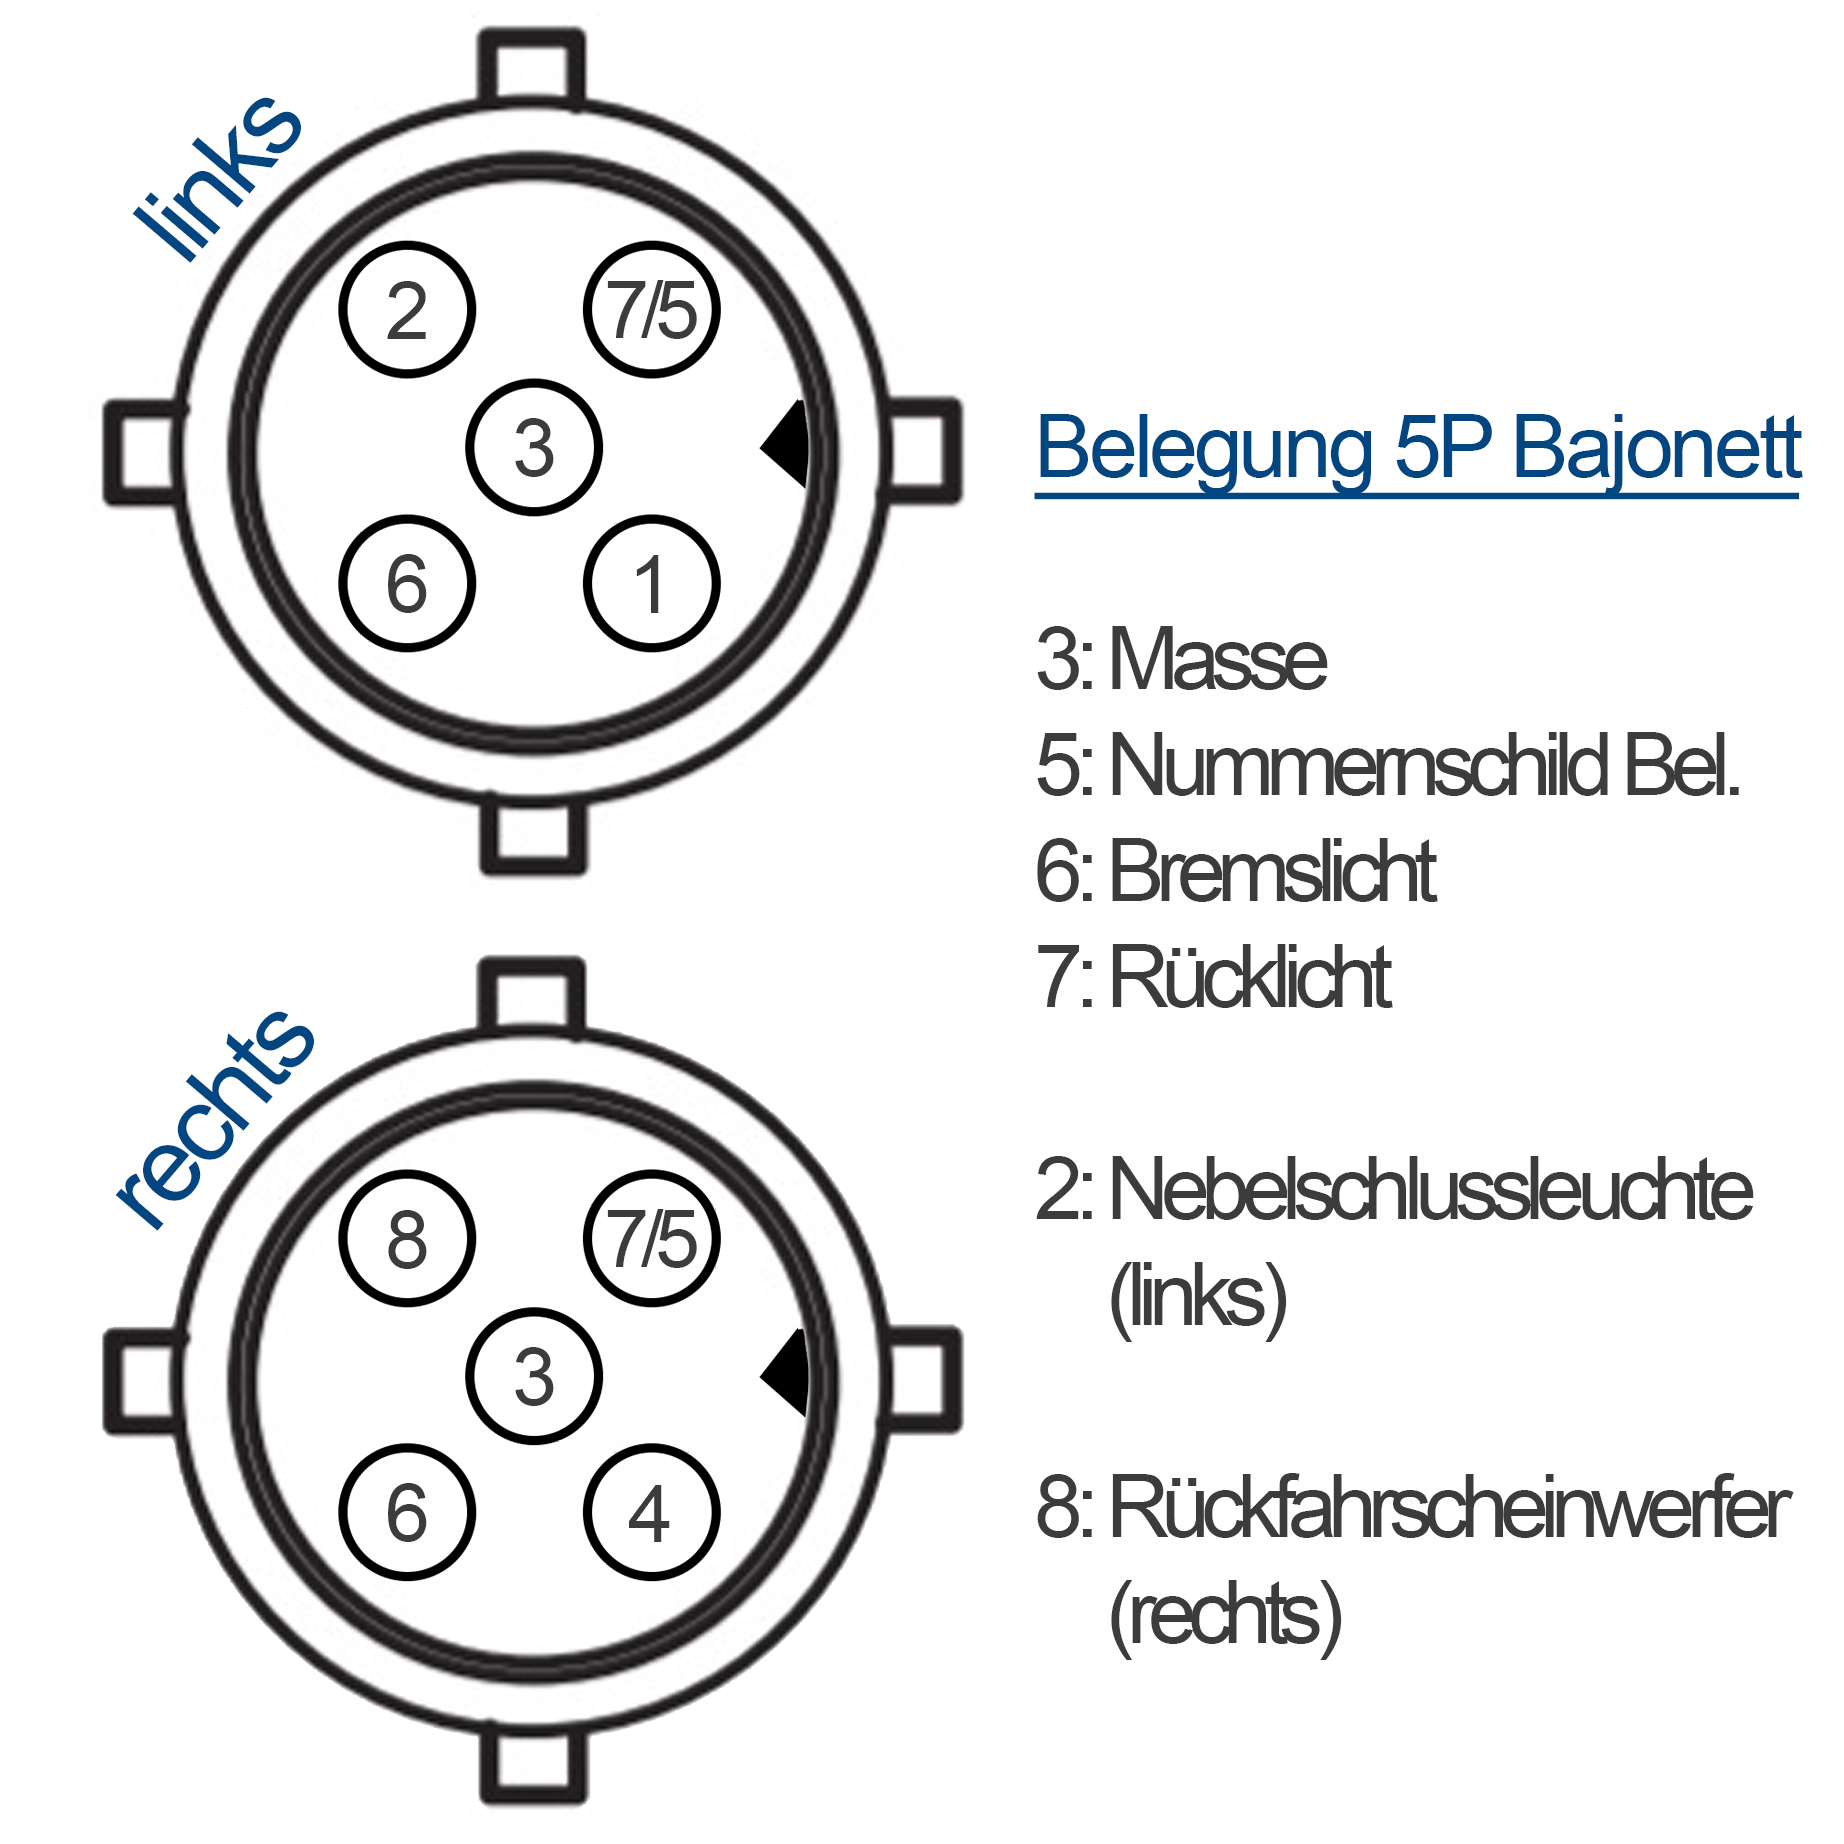 Kabelsatz Anhänger Beleuchtung - 5m - 13Pol - 5P Bajonett